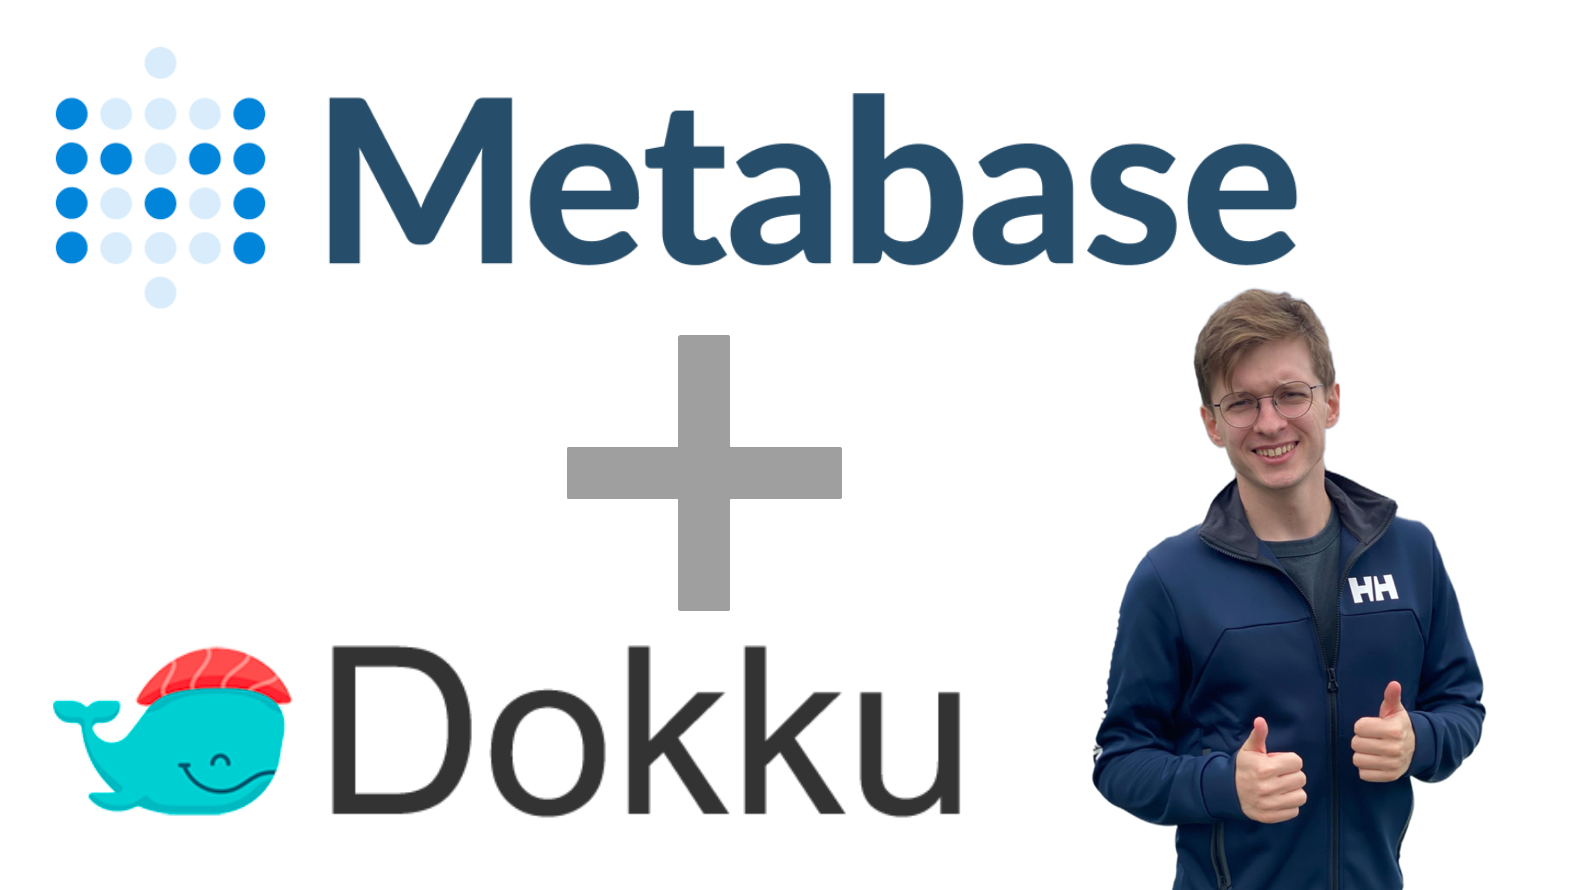 Run Metabase with Dokku